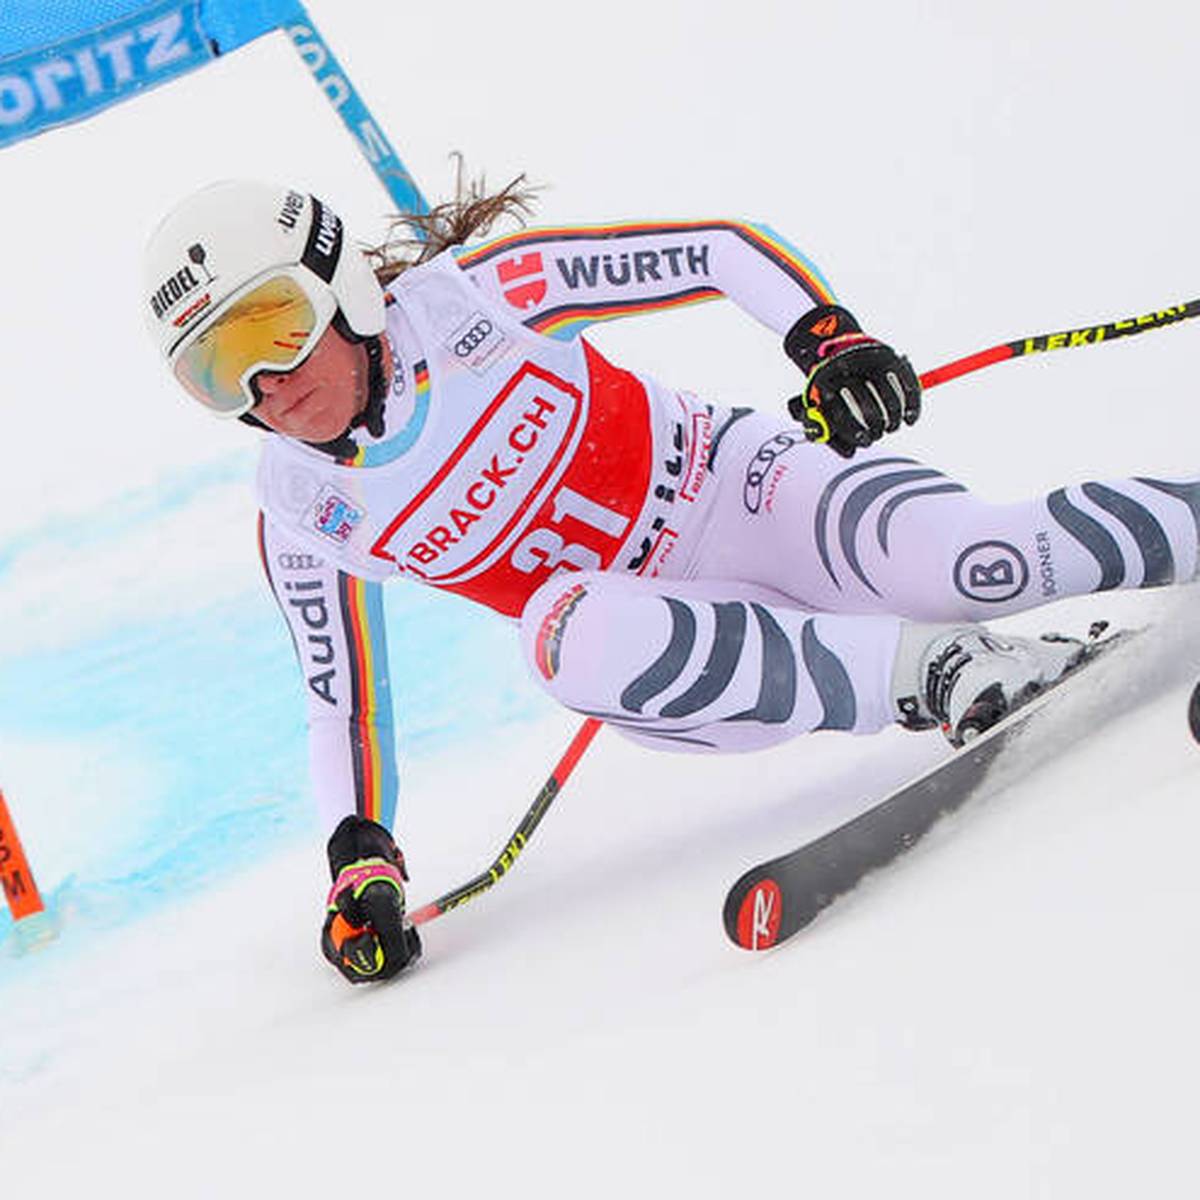 Ski Kira Weidle fährt im Super-G hinterher und flucht